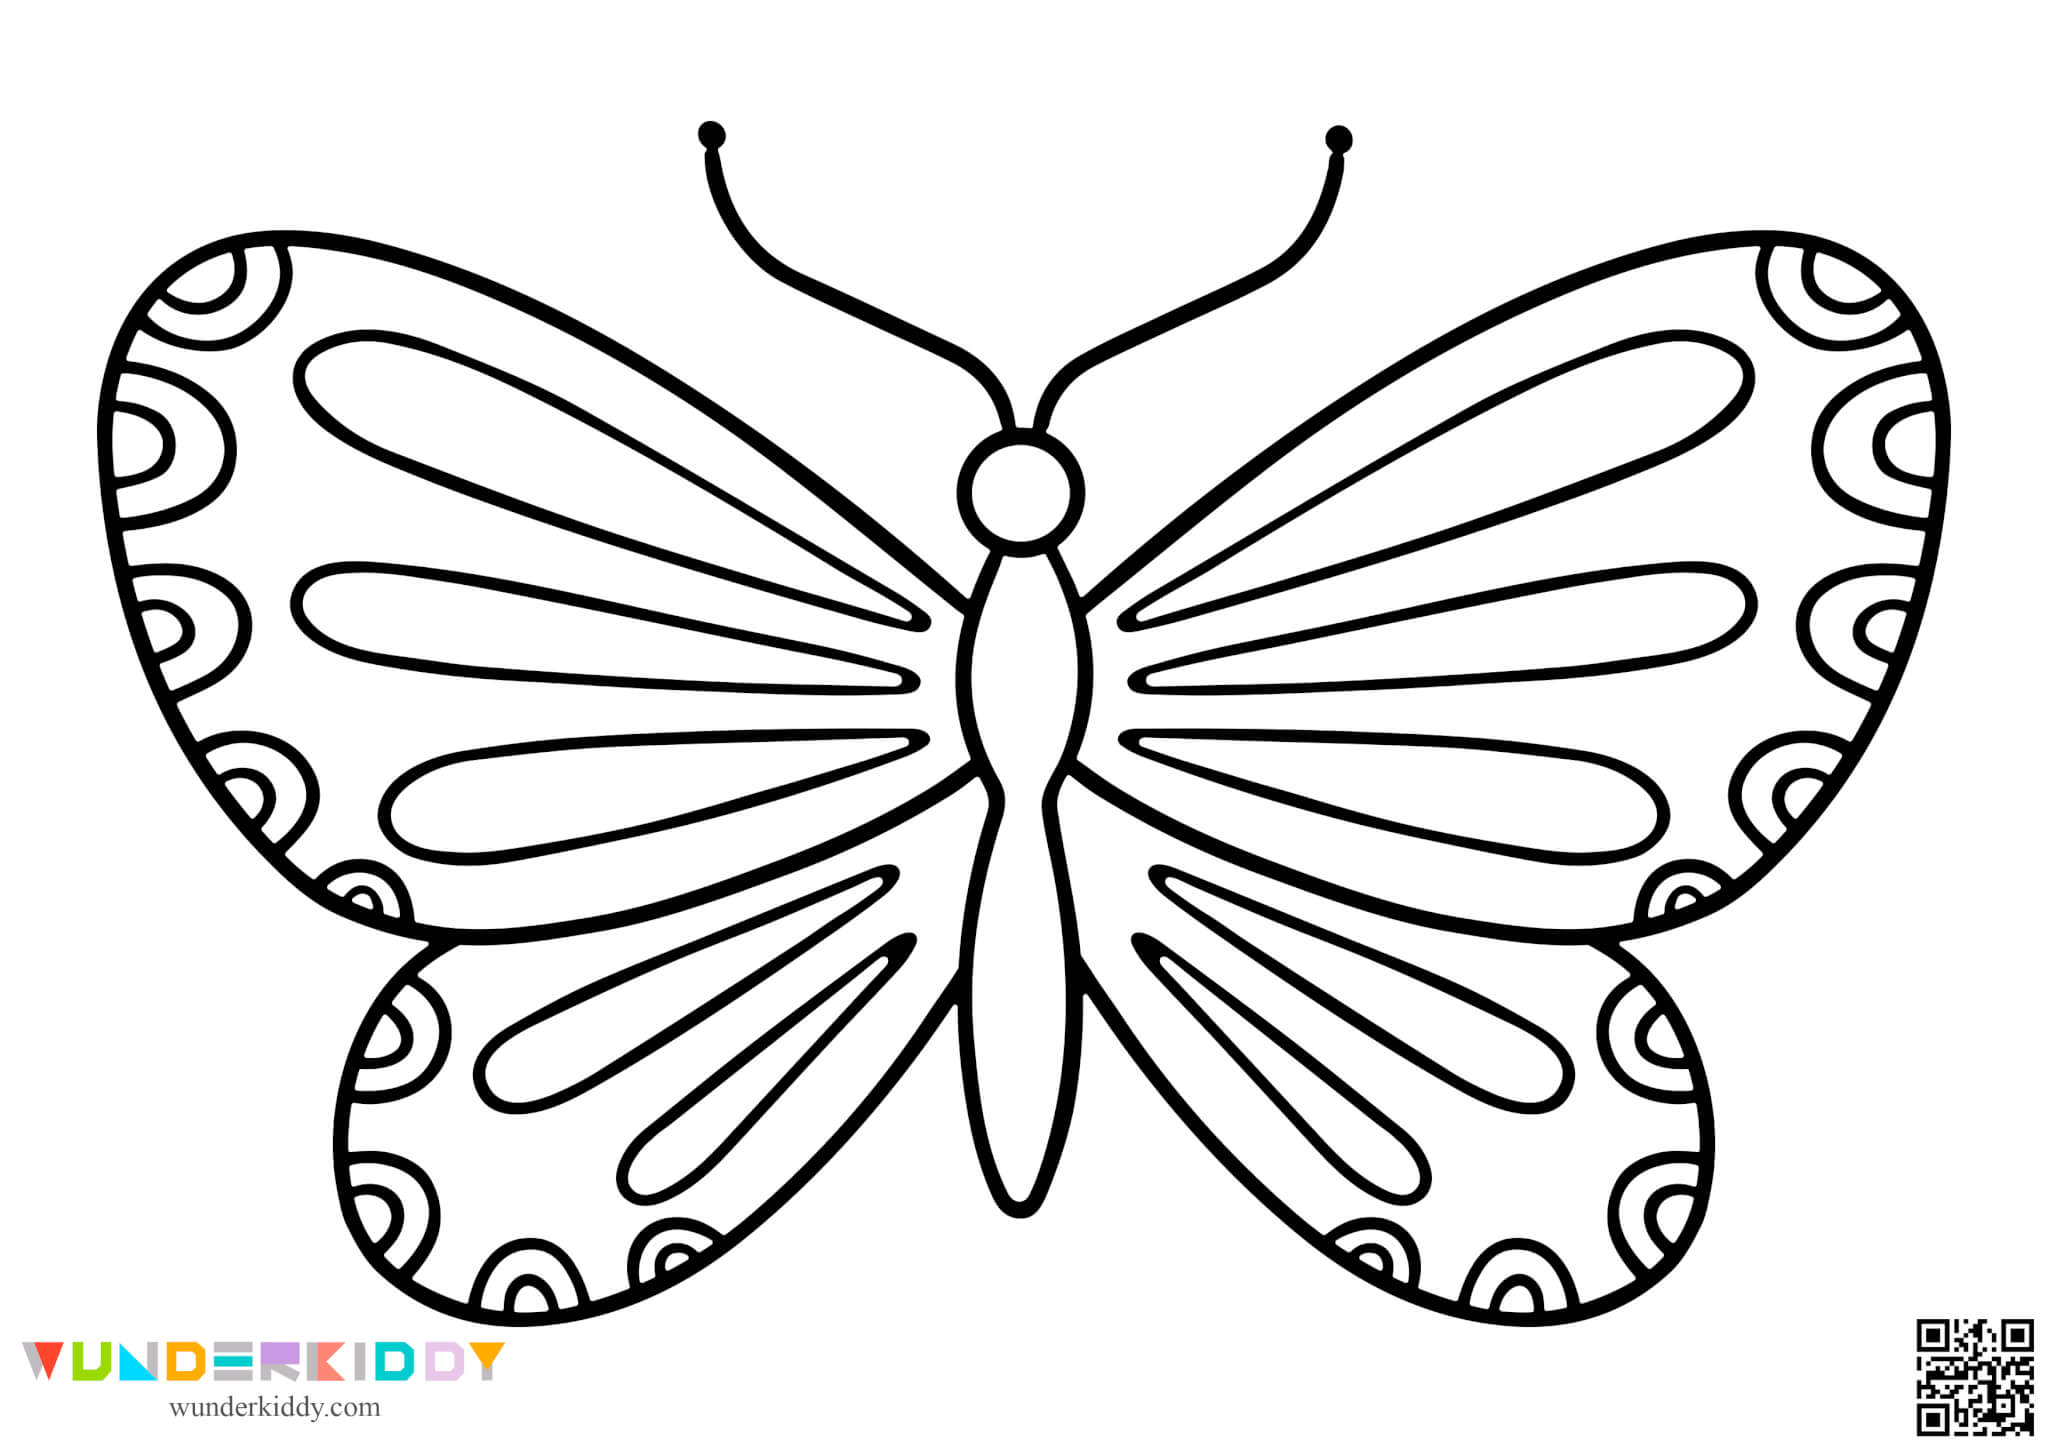 Шаблолоны бабочек для творчества - Изображение 10